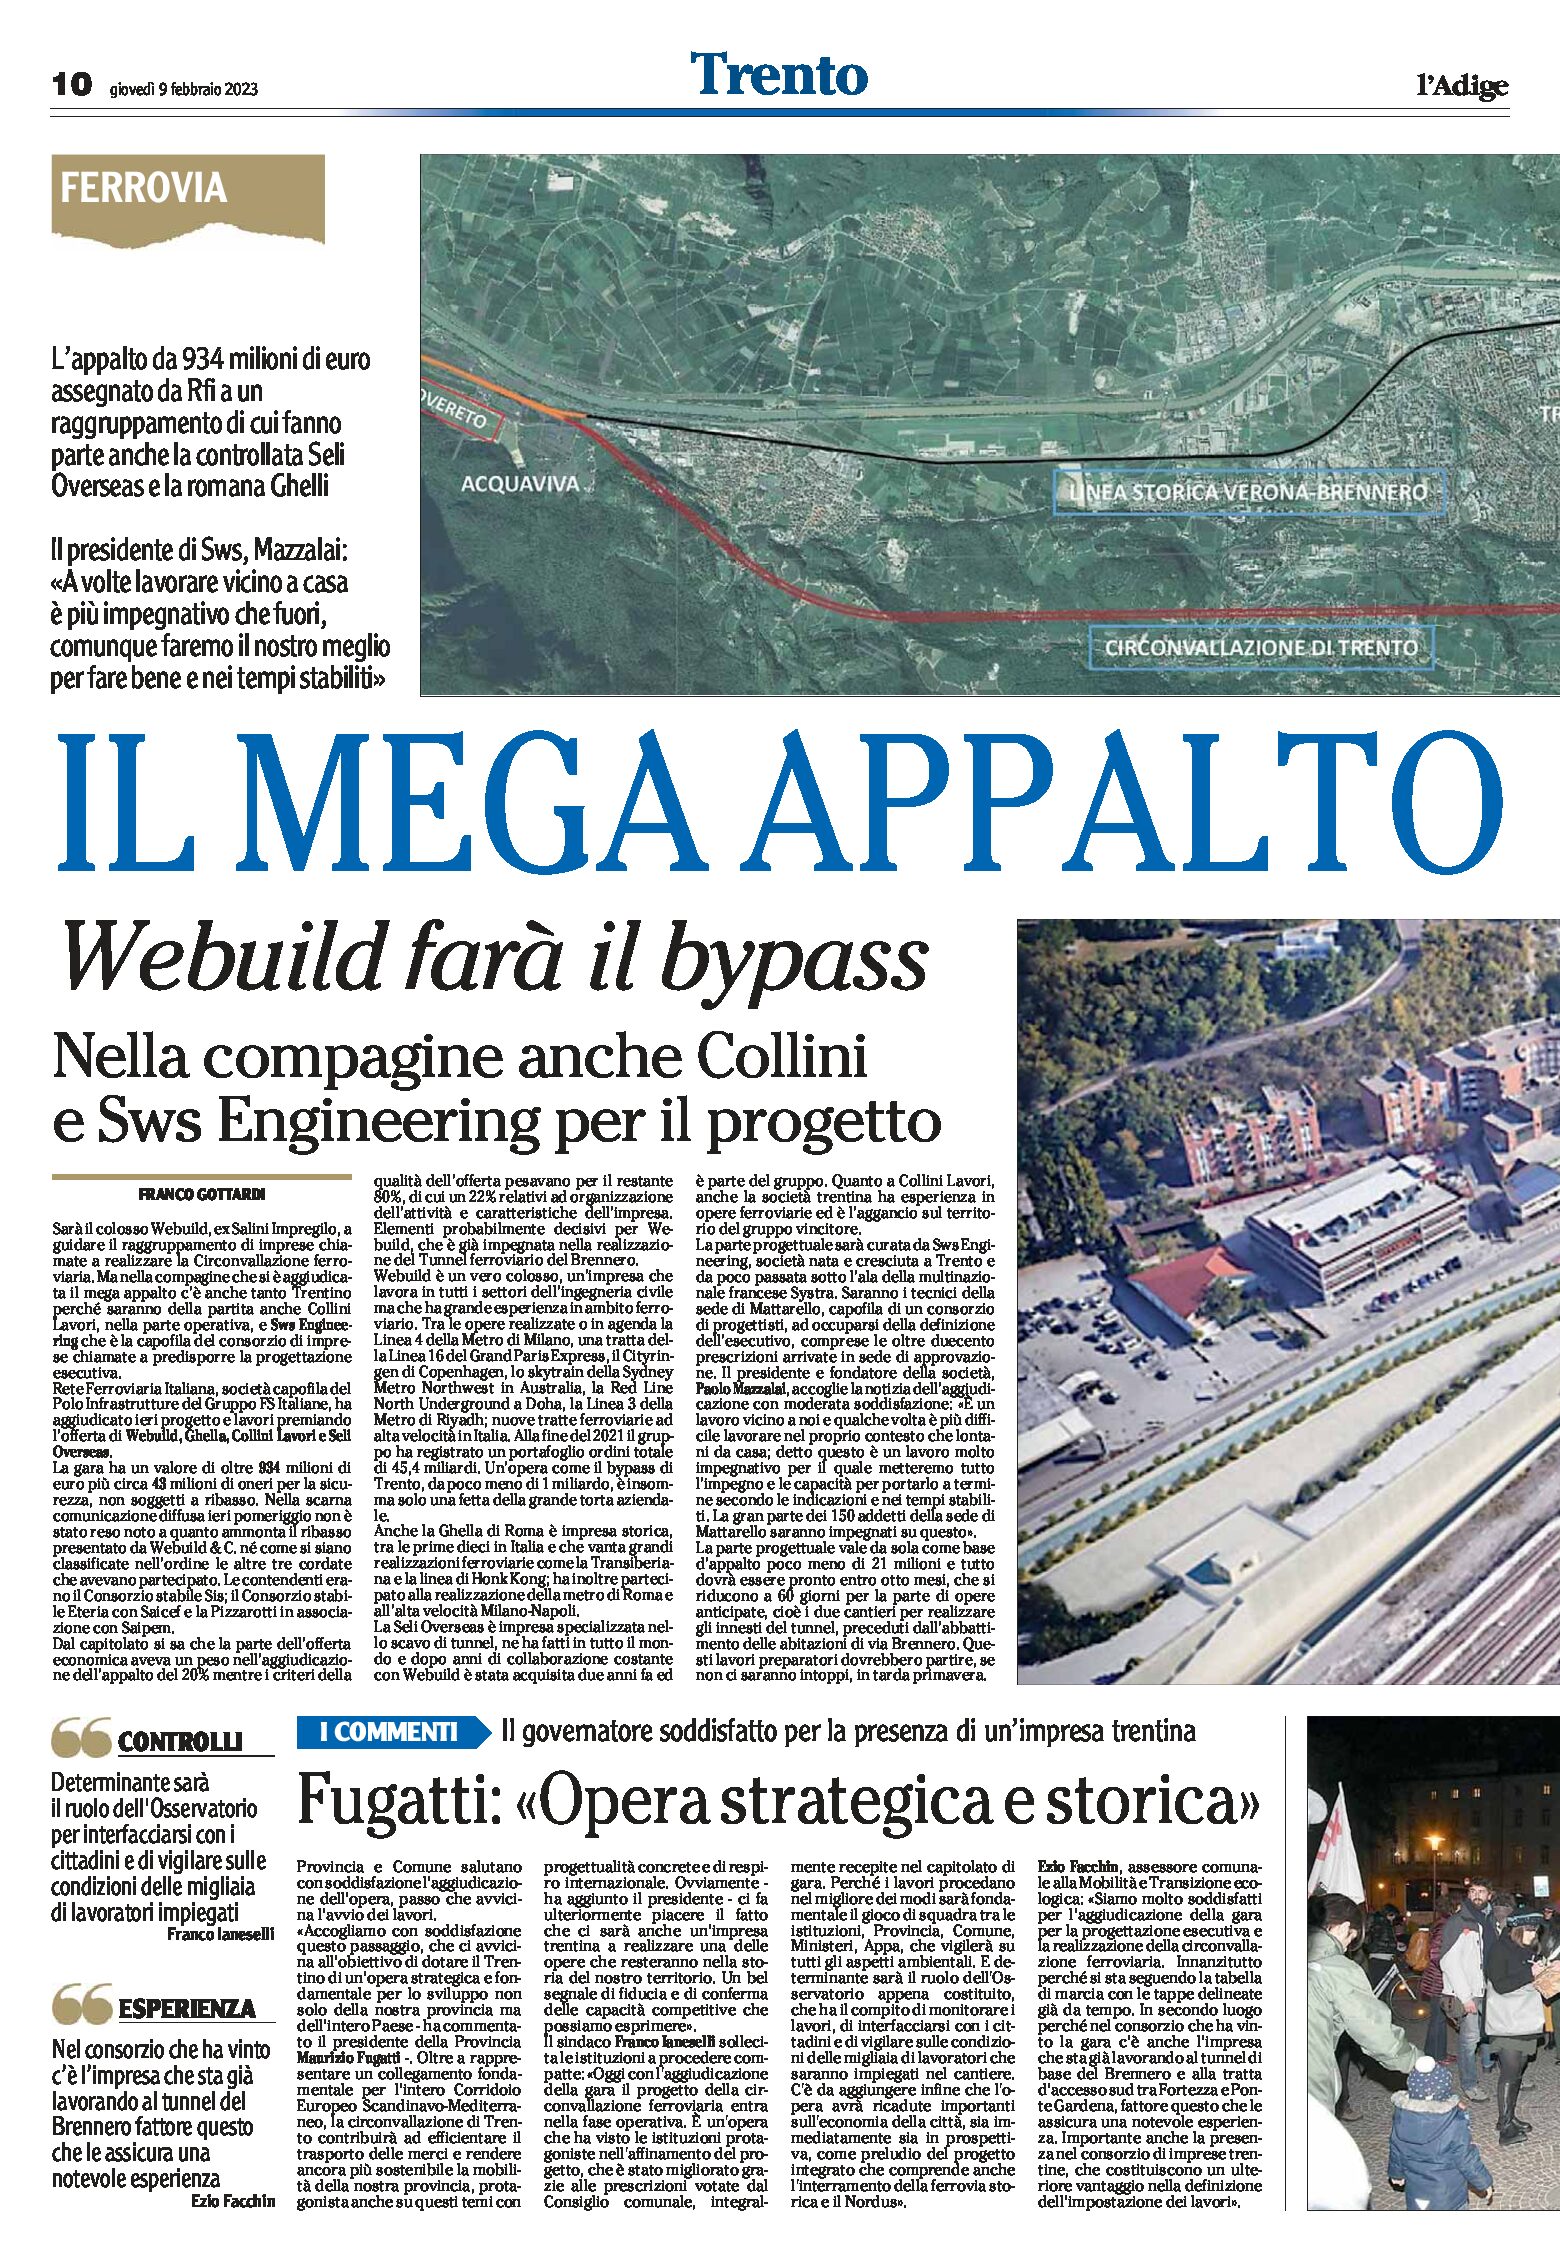 Trento: il mega appalto, Webuild farà il bypass